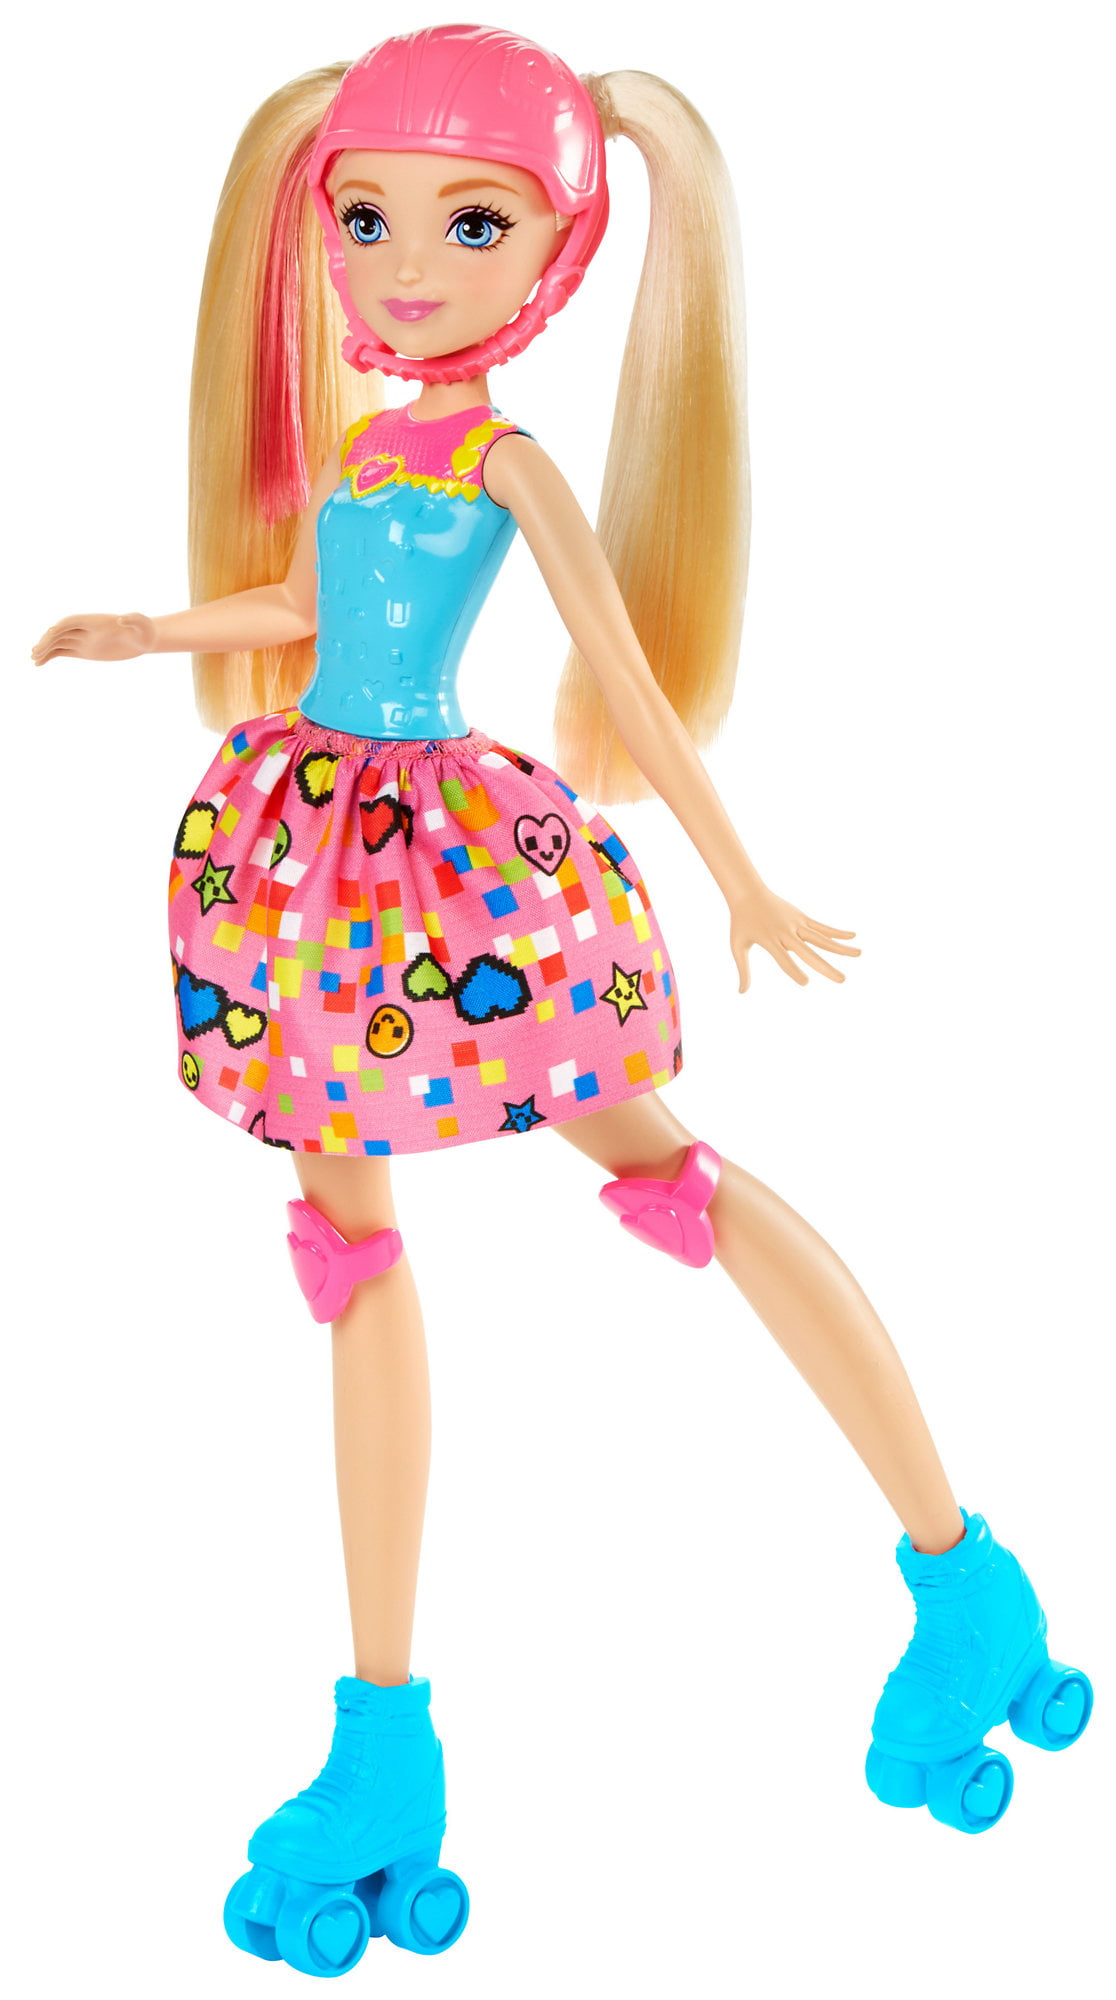 barbie doll barbie doll barbie doll game